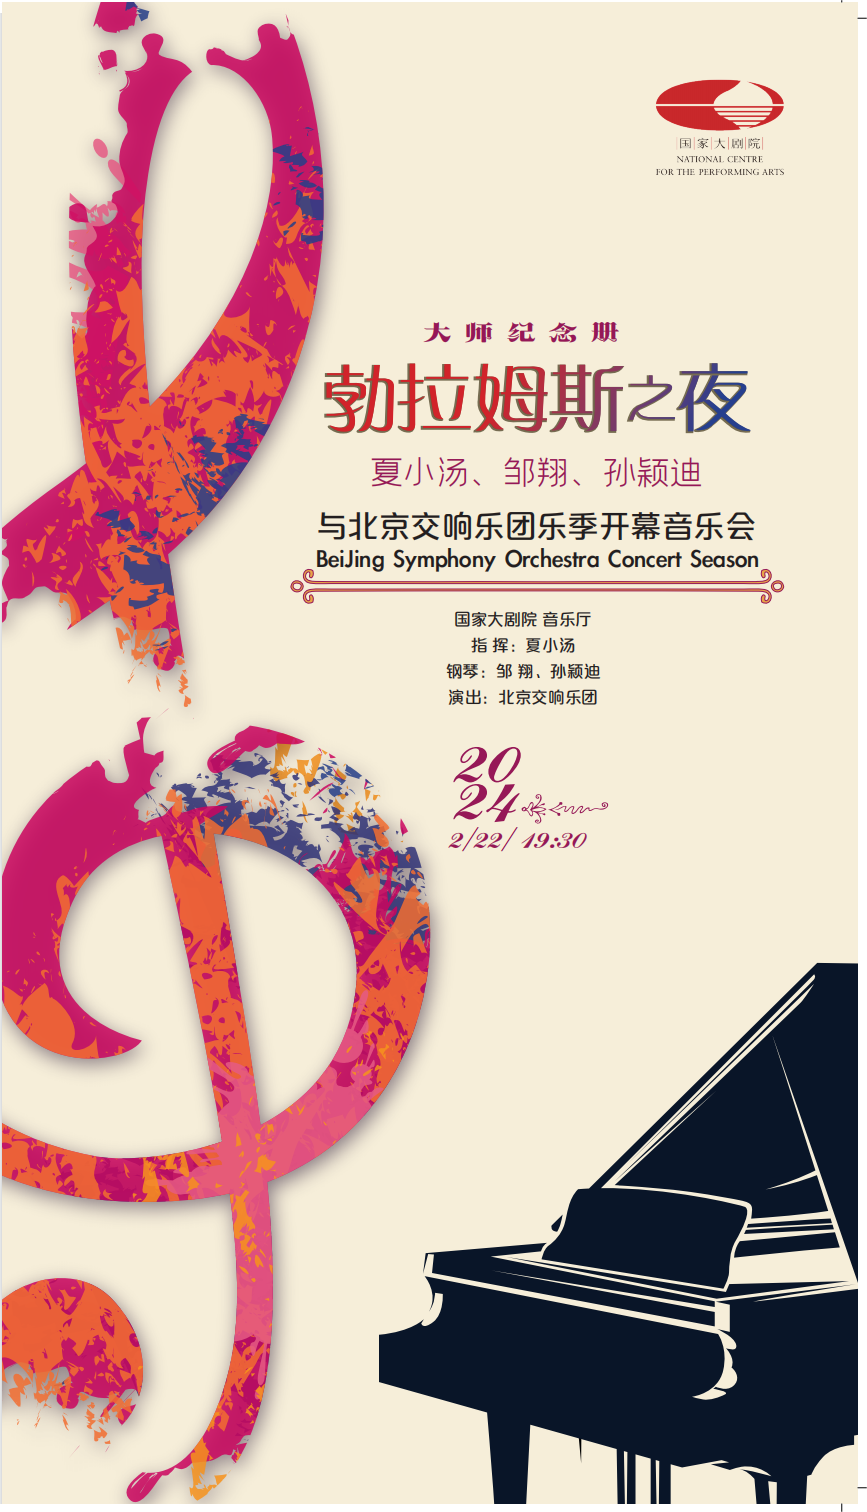 预告| 2月22日，北京交响乐团将用两部勃拉姆斯钢琴协奏曲向大师致敬！